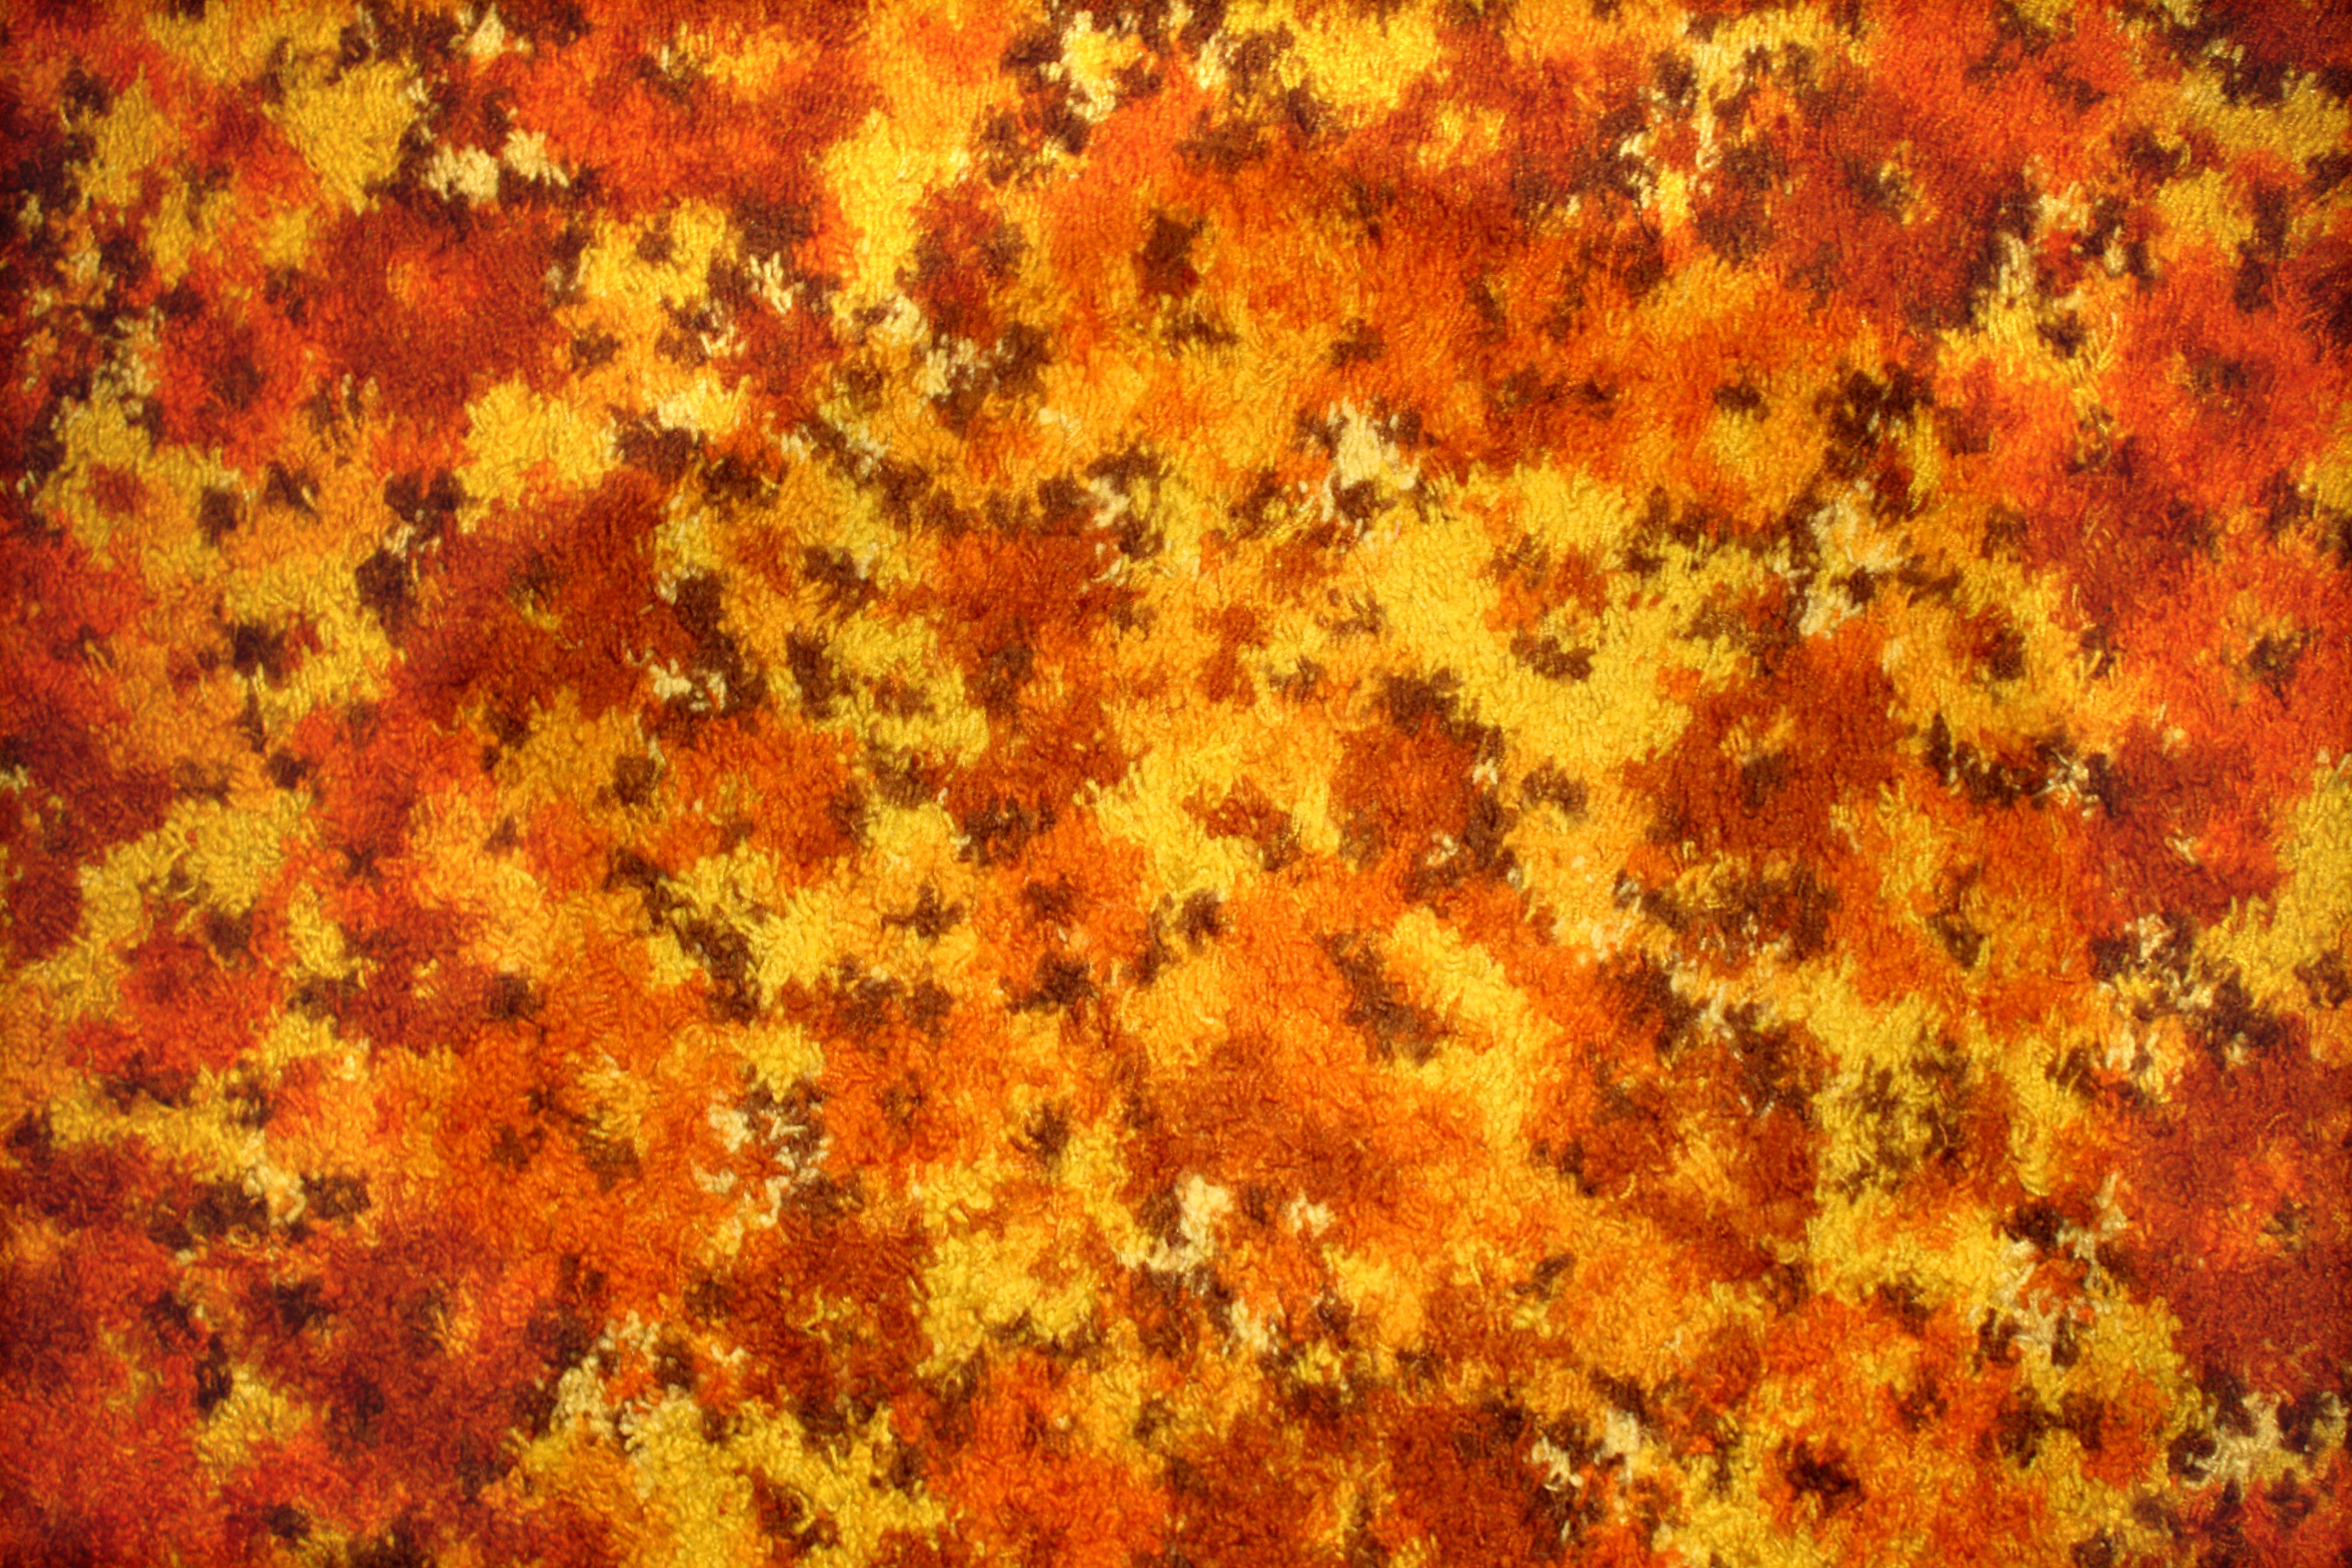 Orange Floral Carpet Texture Picture Photograph Photos Public